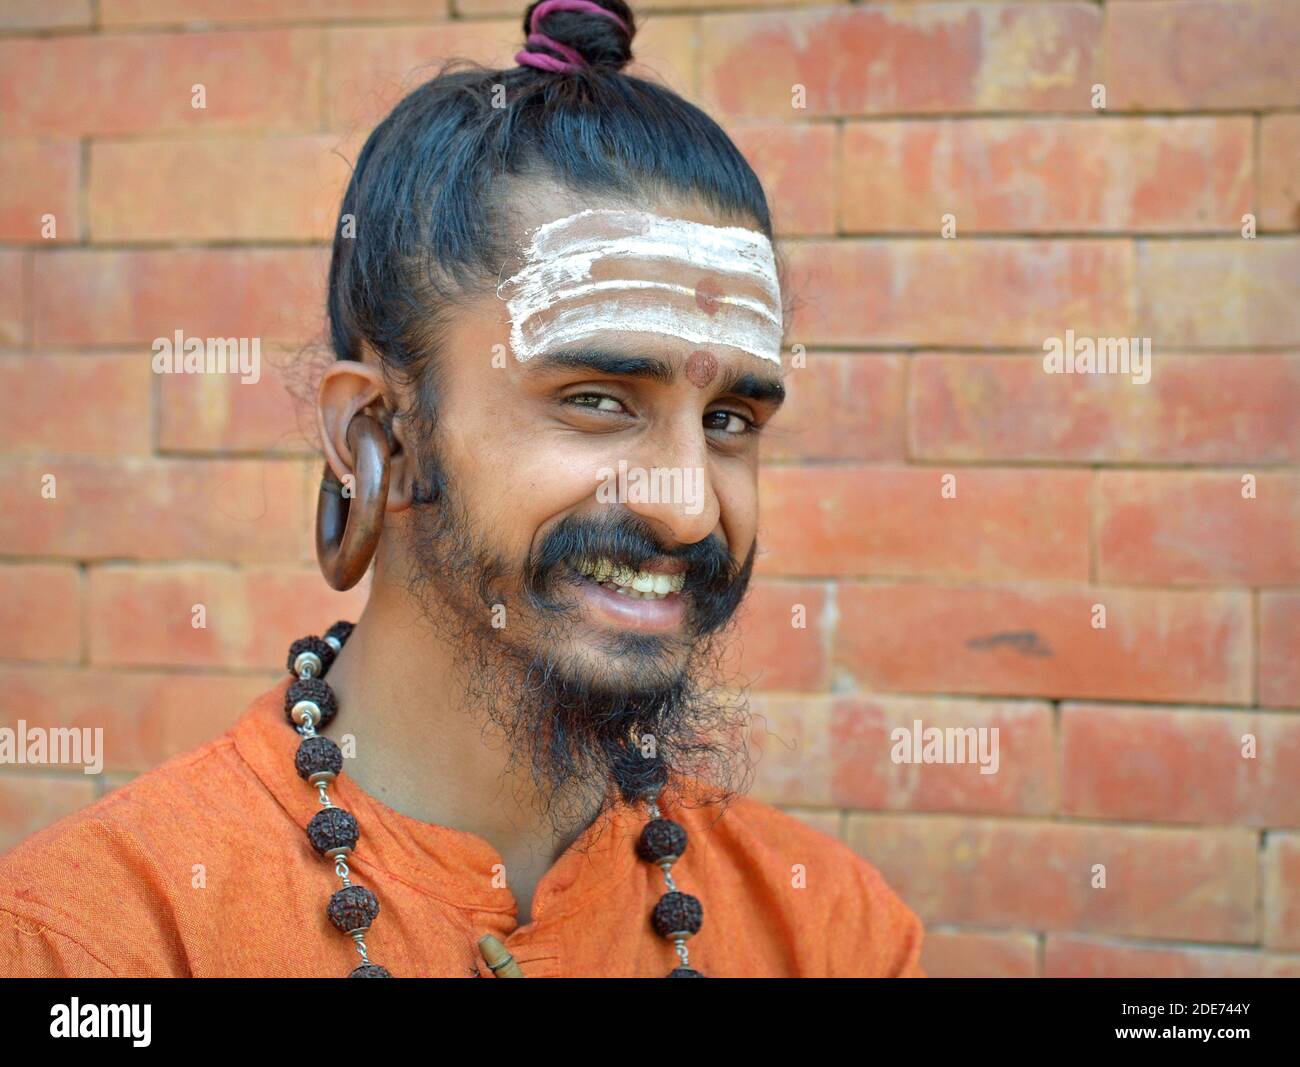 L'allegro giovane indù Shaivite Gorakhnathi (Kanphata), monaco di yogi con il massimo della pistola e gli enormi orecchini firmati dell'ordine Gorakh-Nath si pongono per la telecamera. Foto Stock